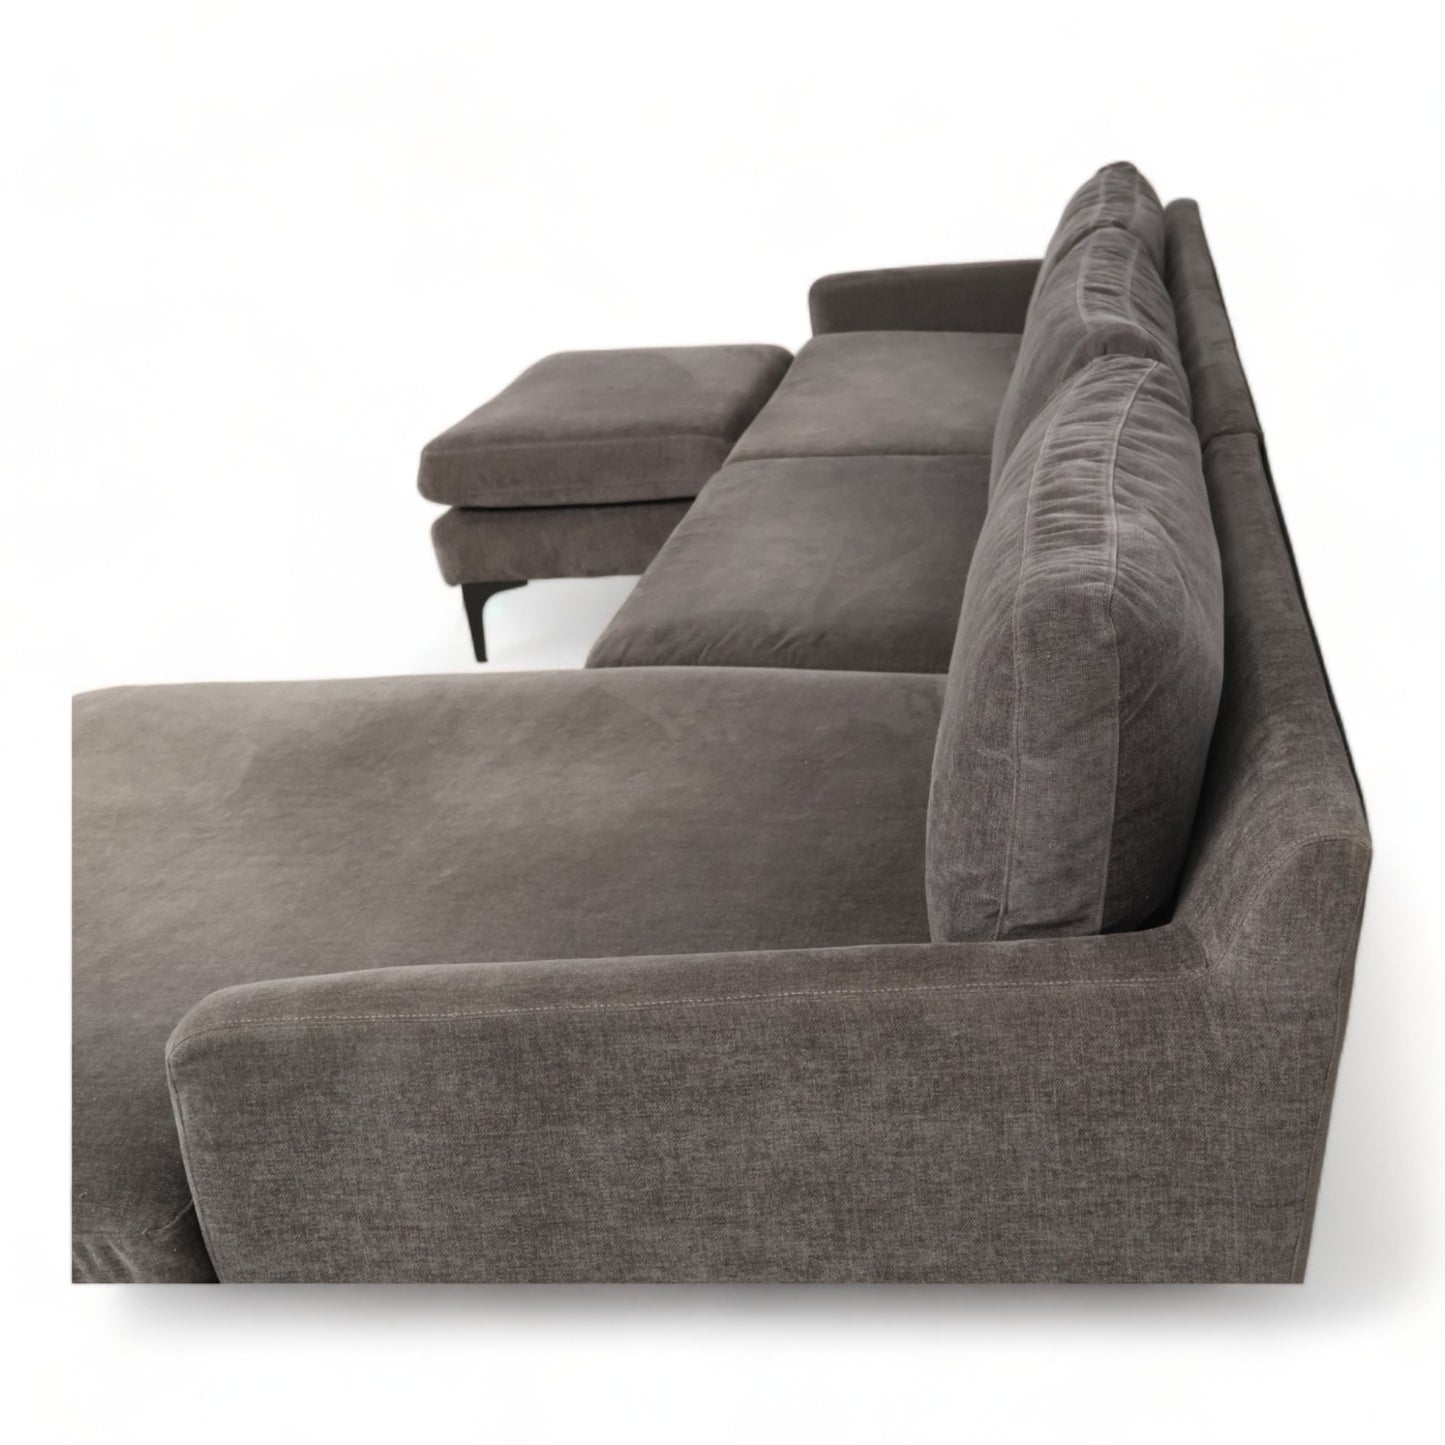 Nyrenset | Astha sofa og puff med sjeselong fra SofaCompany